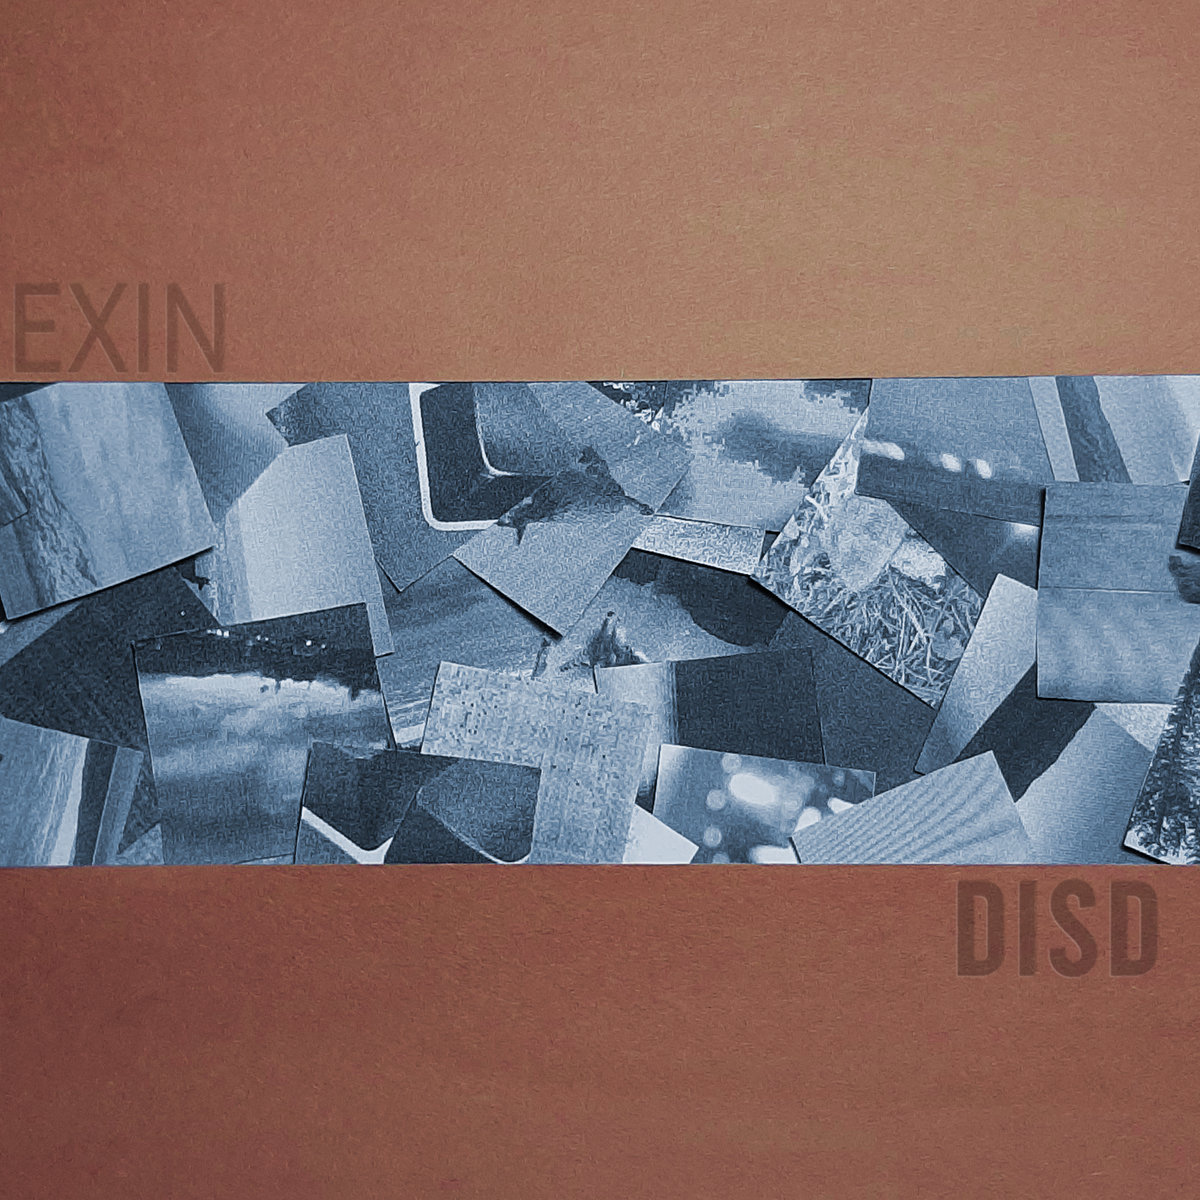 Disd - EXIN